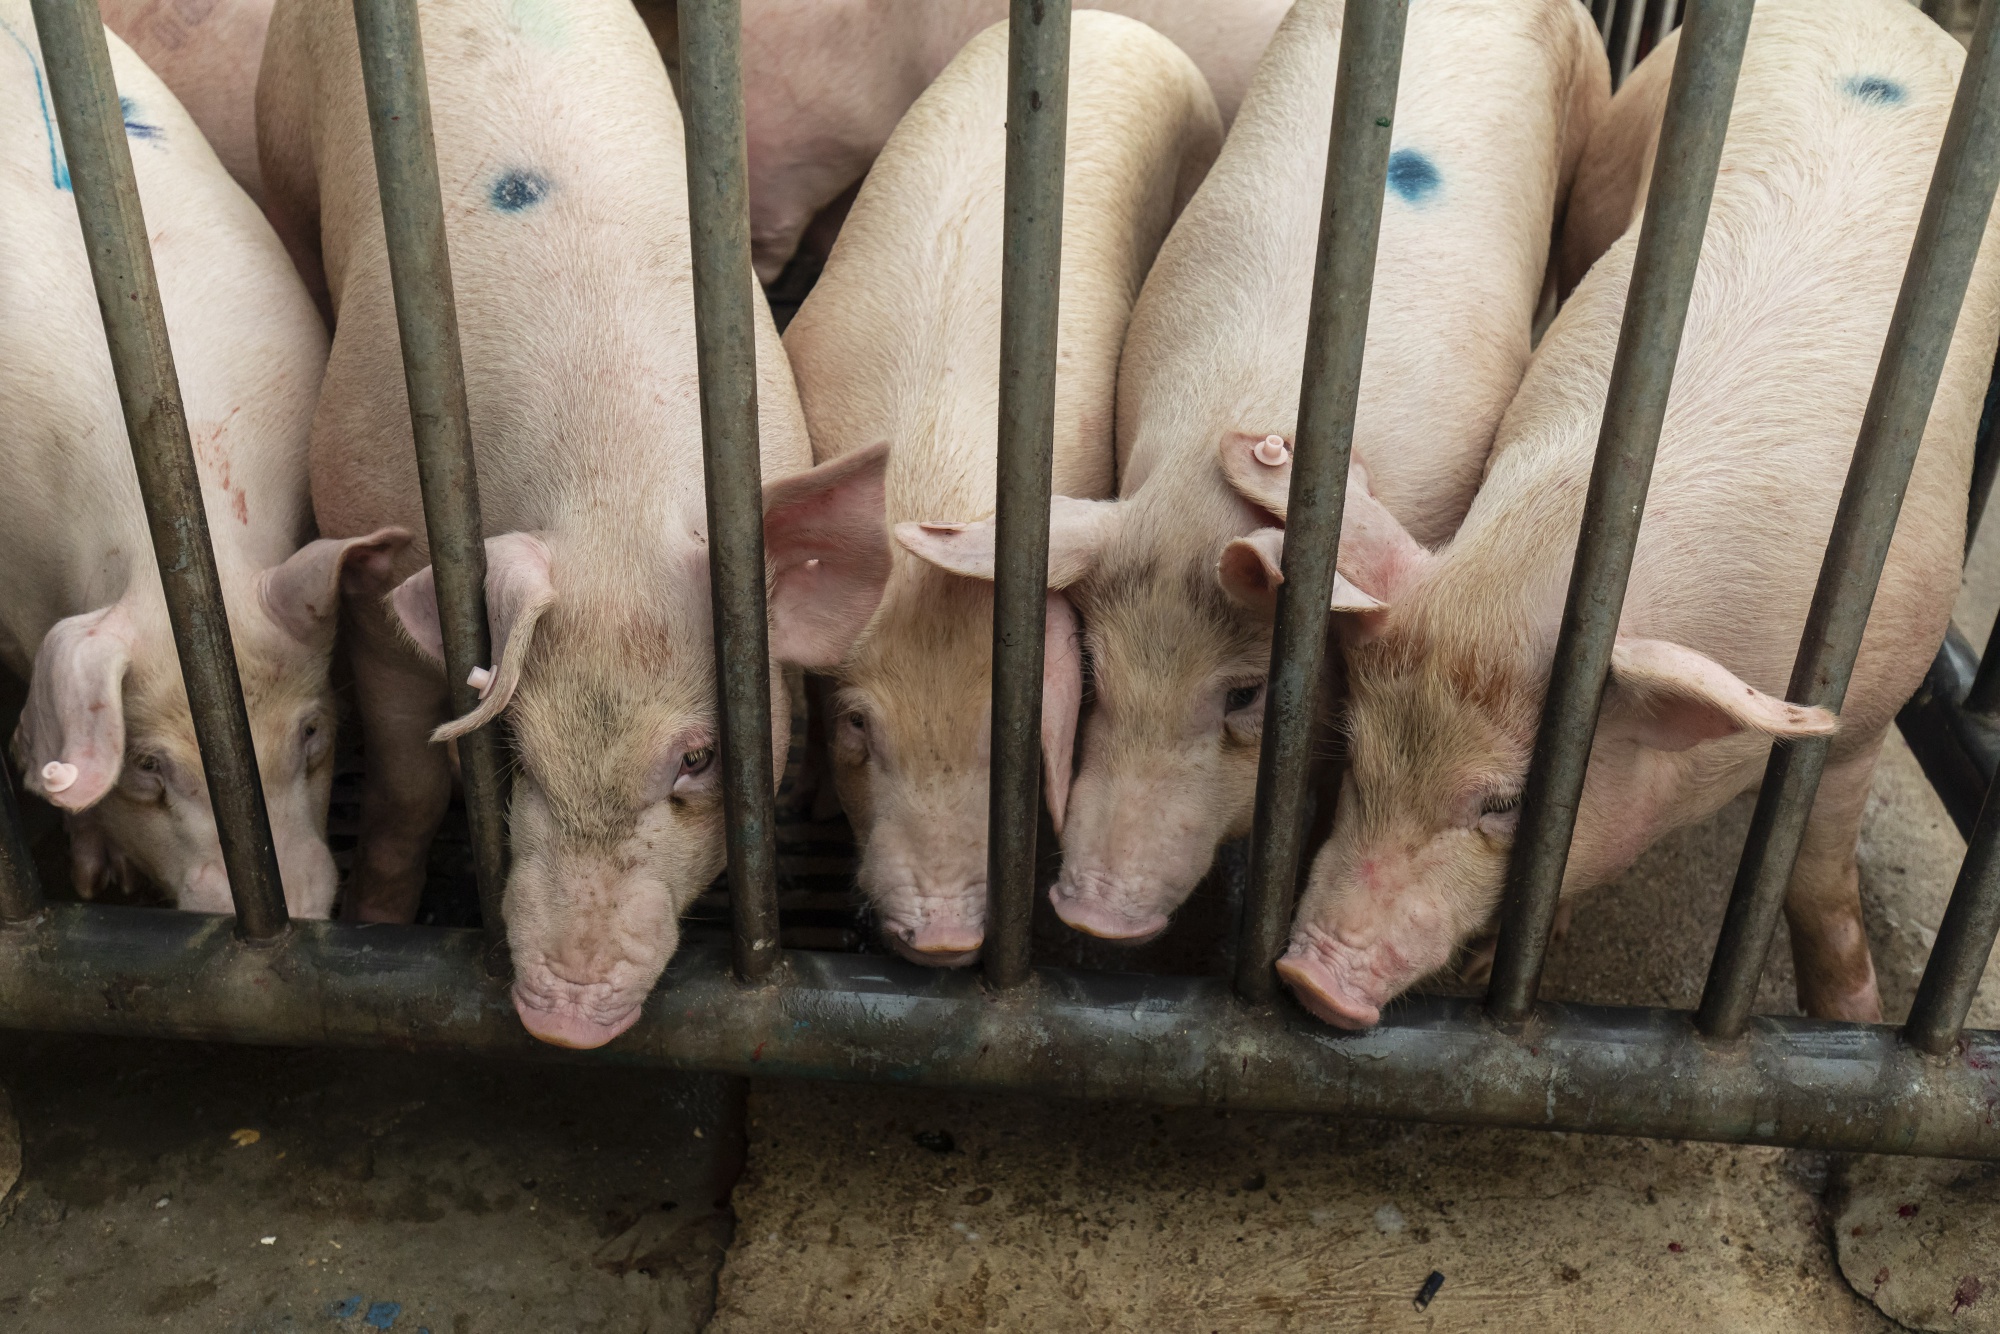 World's Fastest Rising Billionaire is Pig Farmer - Bloomberg